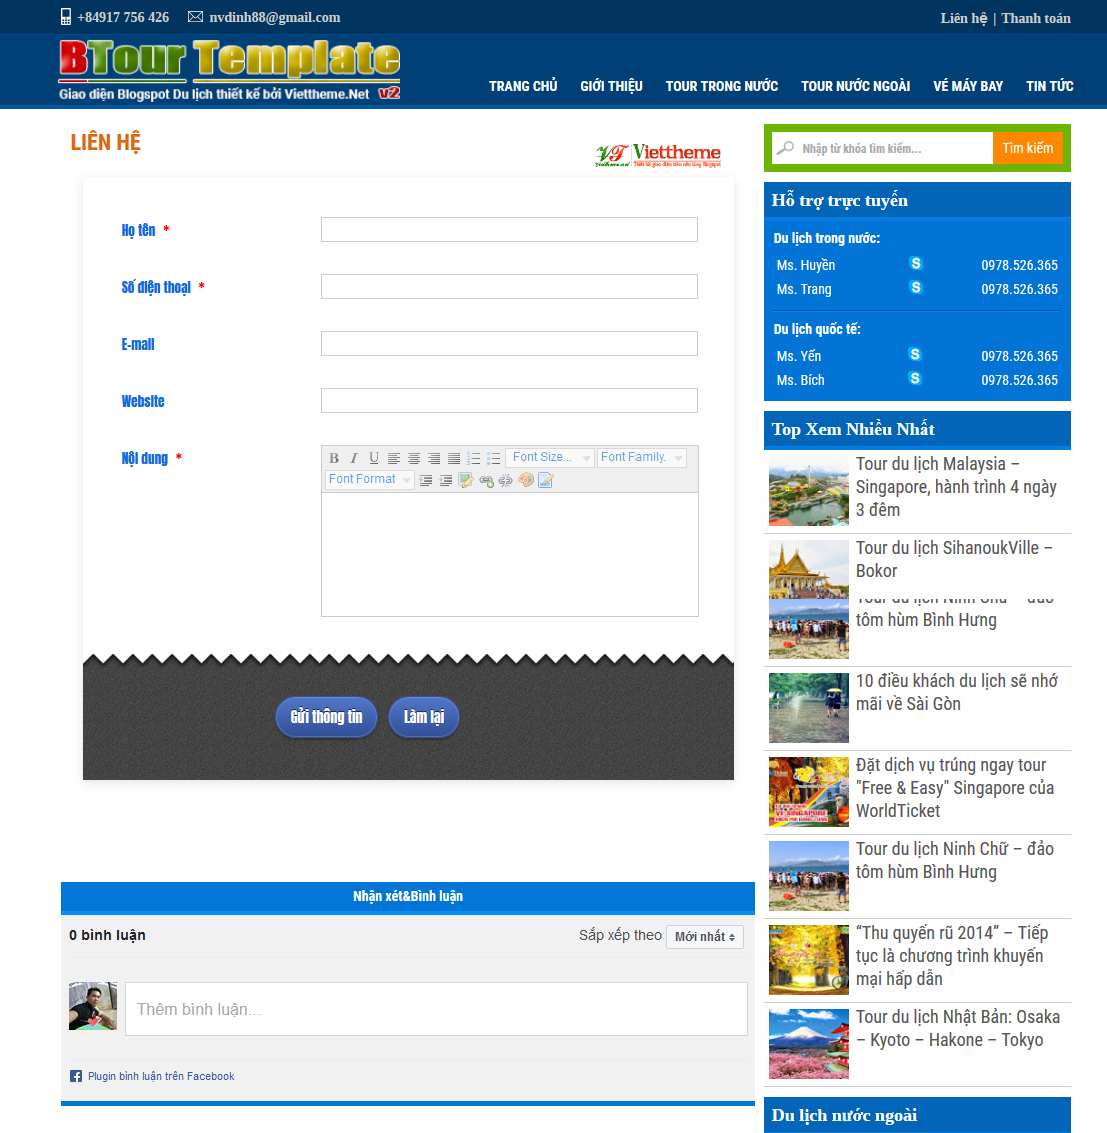 BTour v2 Template - Một template bán tour du lịch dành cho Blogspot 